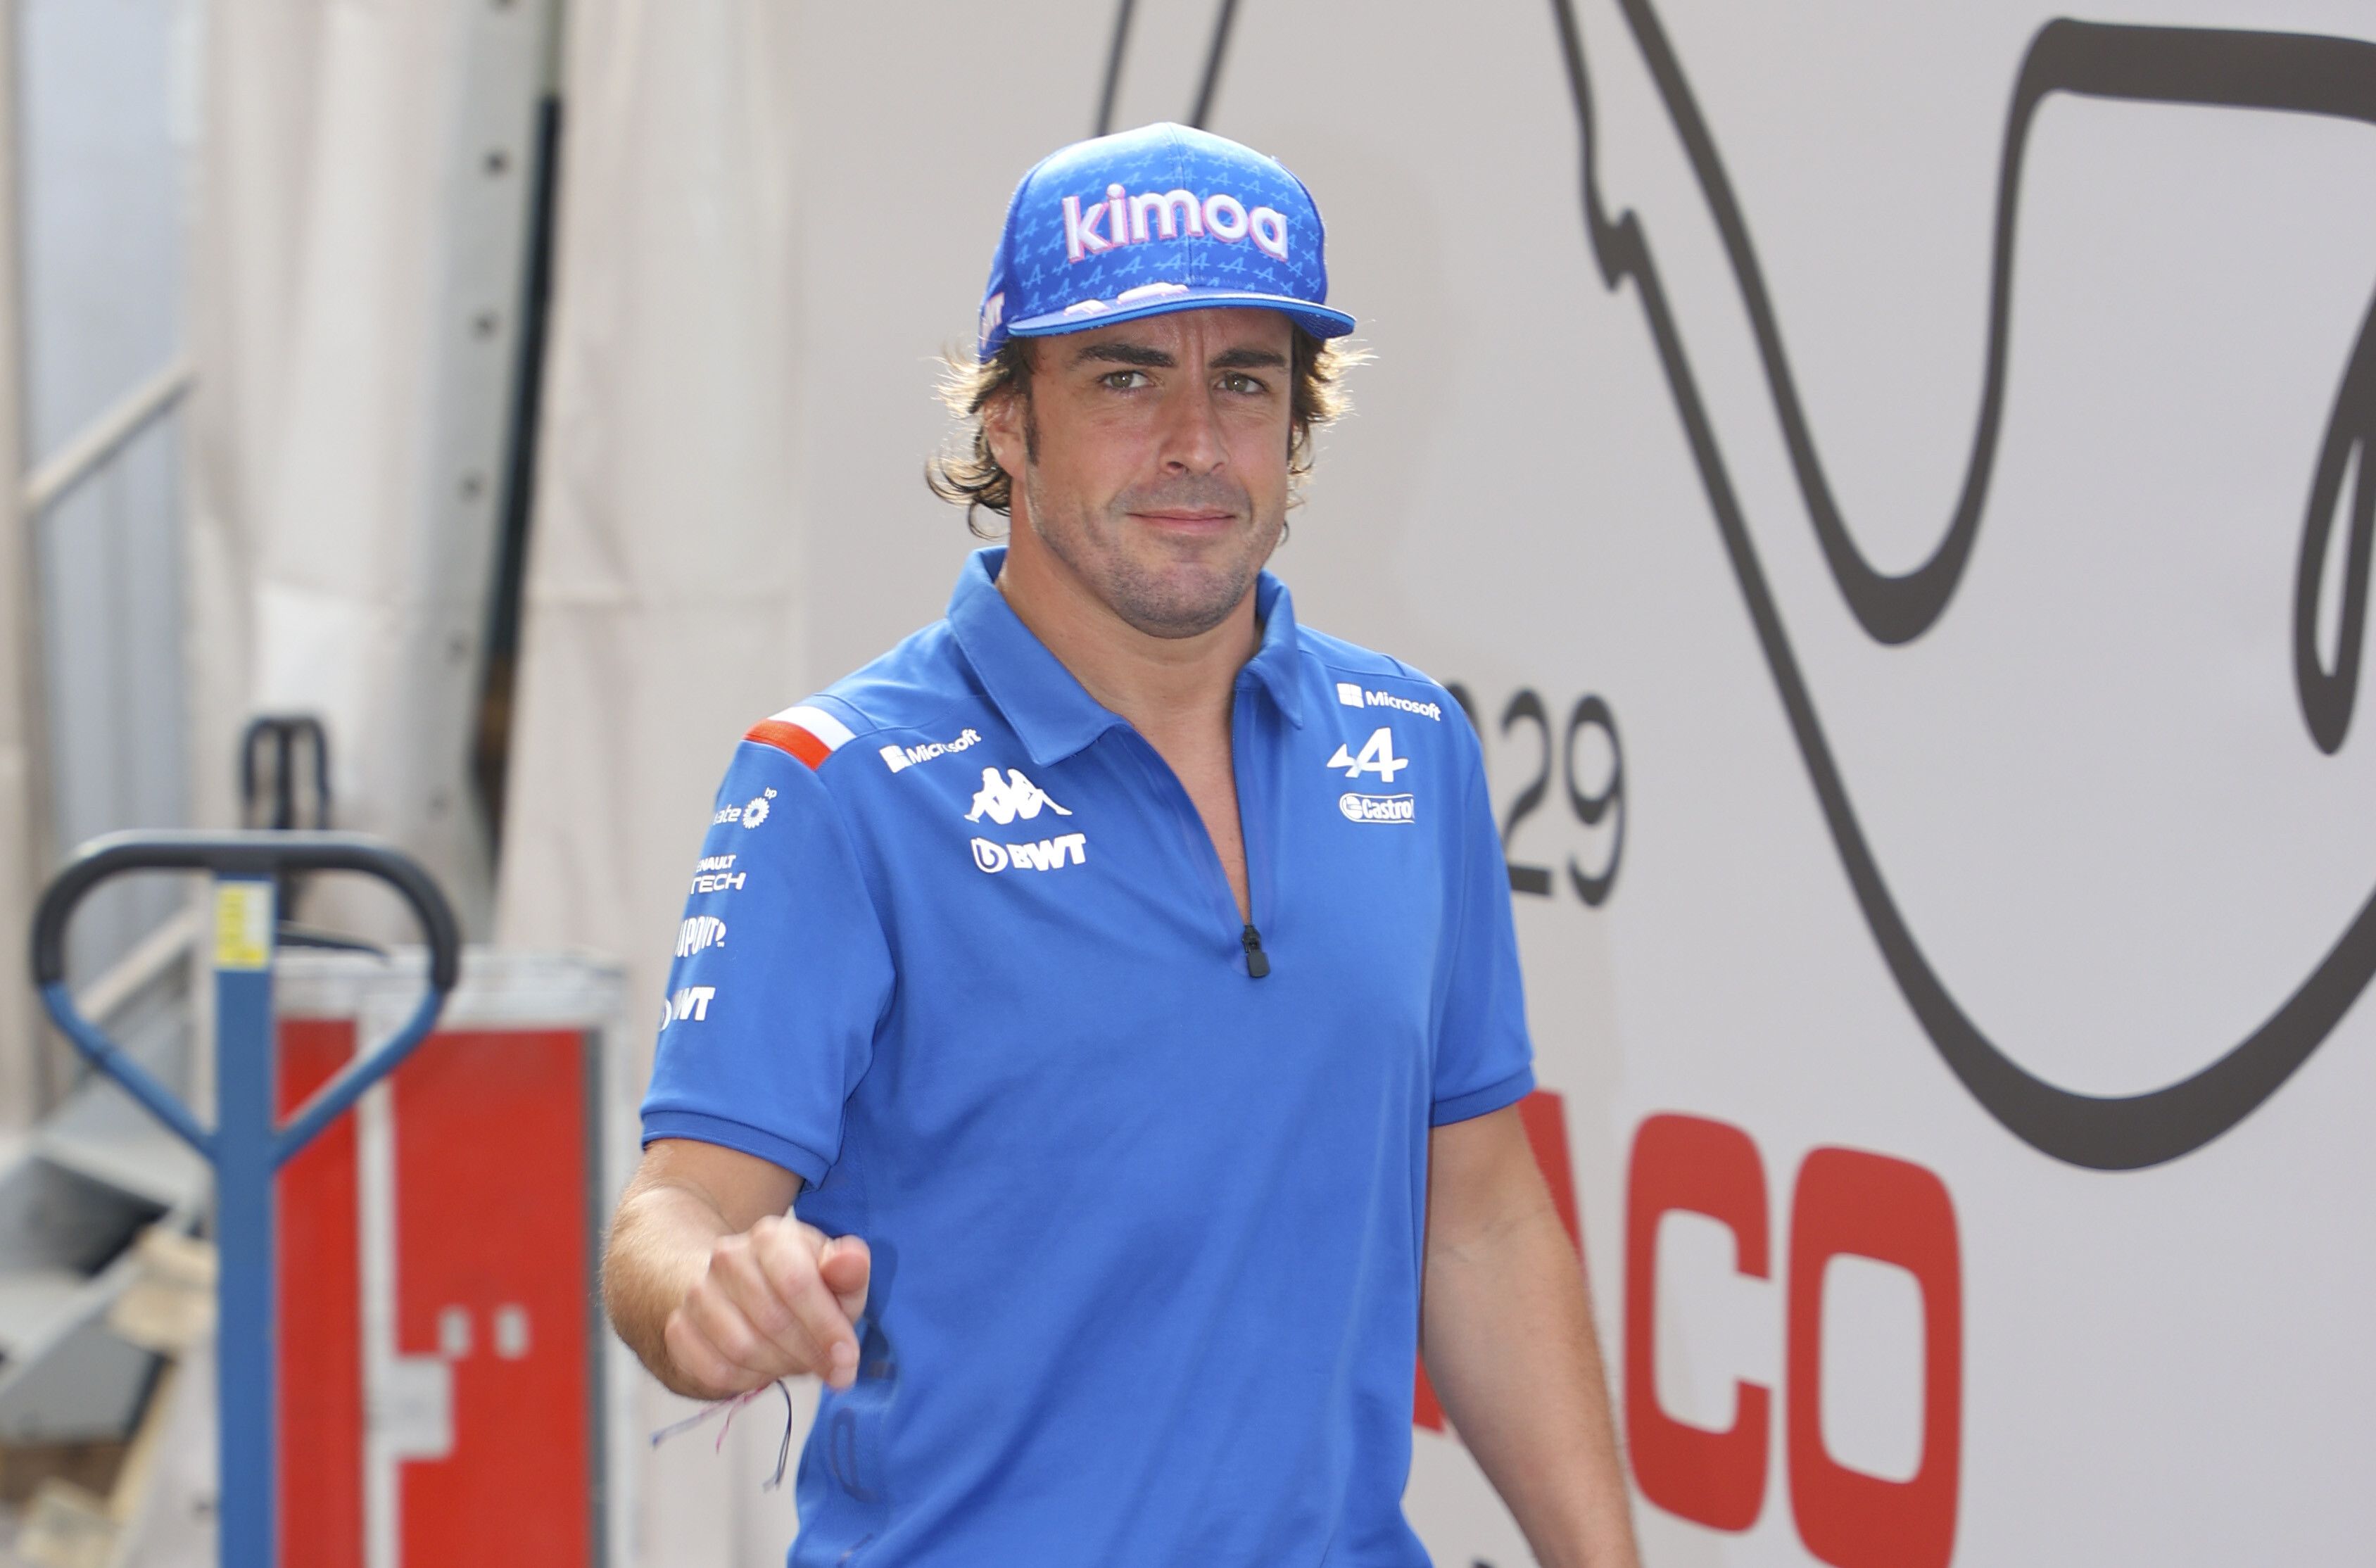 Apoya a Fernando Alonso en la Fórmula 1 con la camiseta oficial